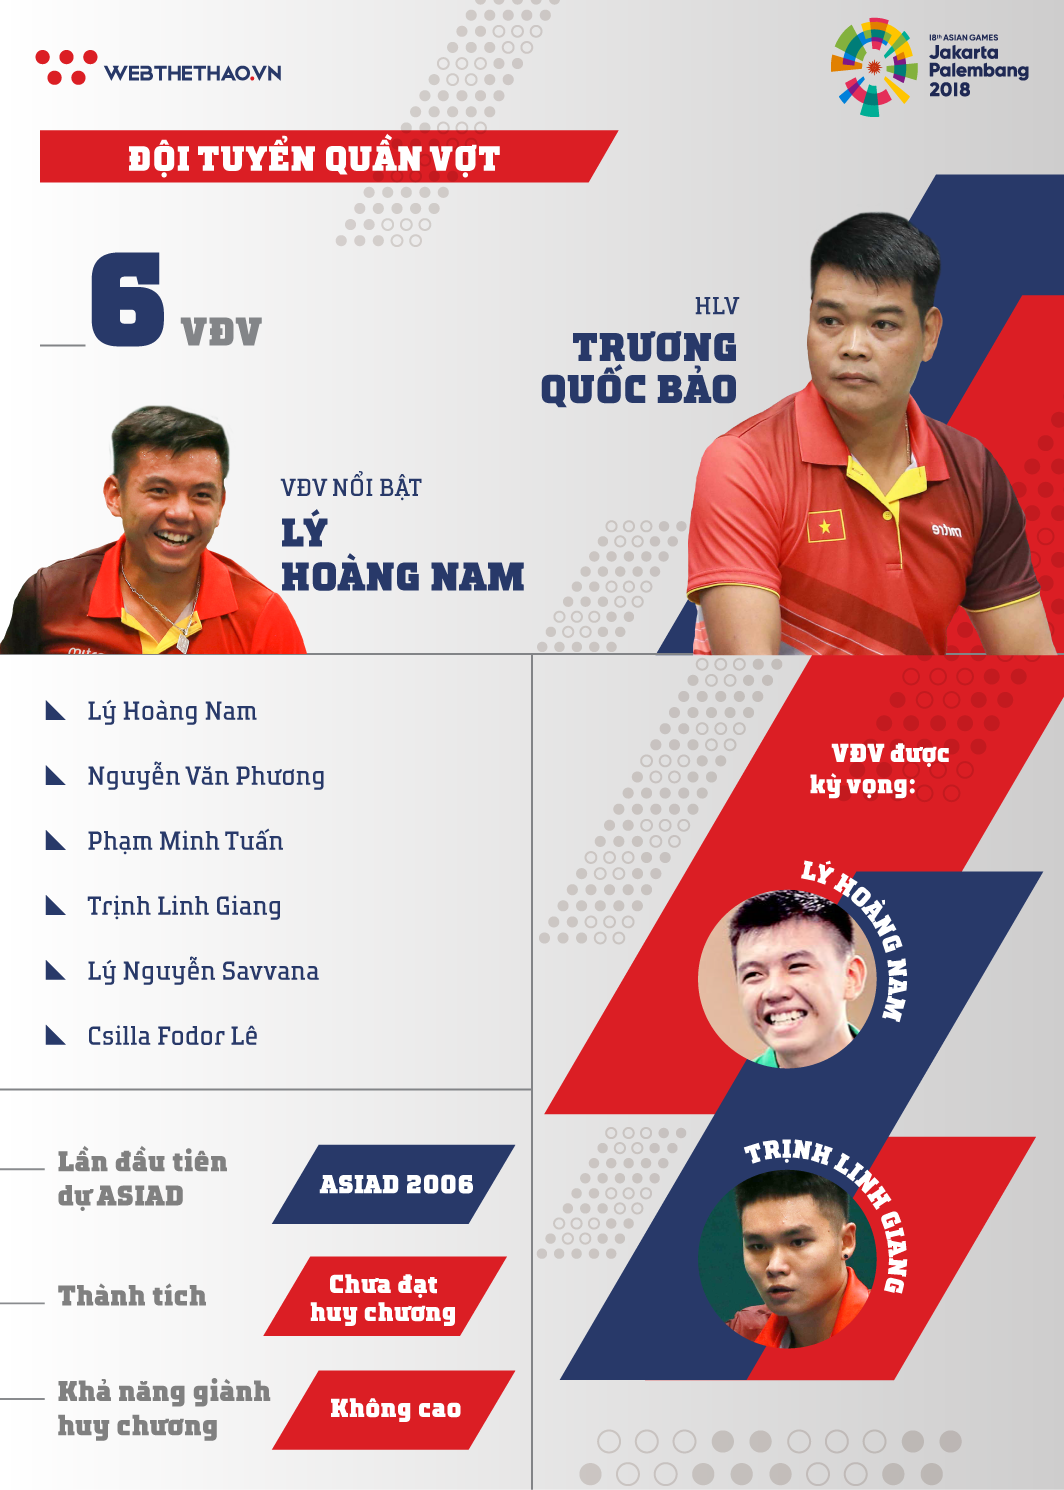 Thông tin đội tuyển quần vợt Việt Nam tham dự ASIAD 2018 - Ảnh 1.